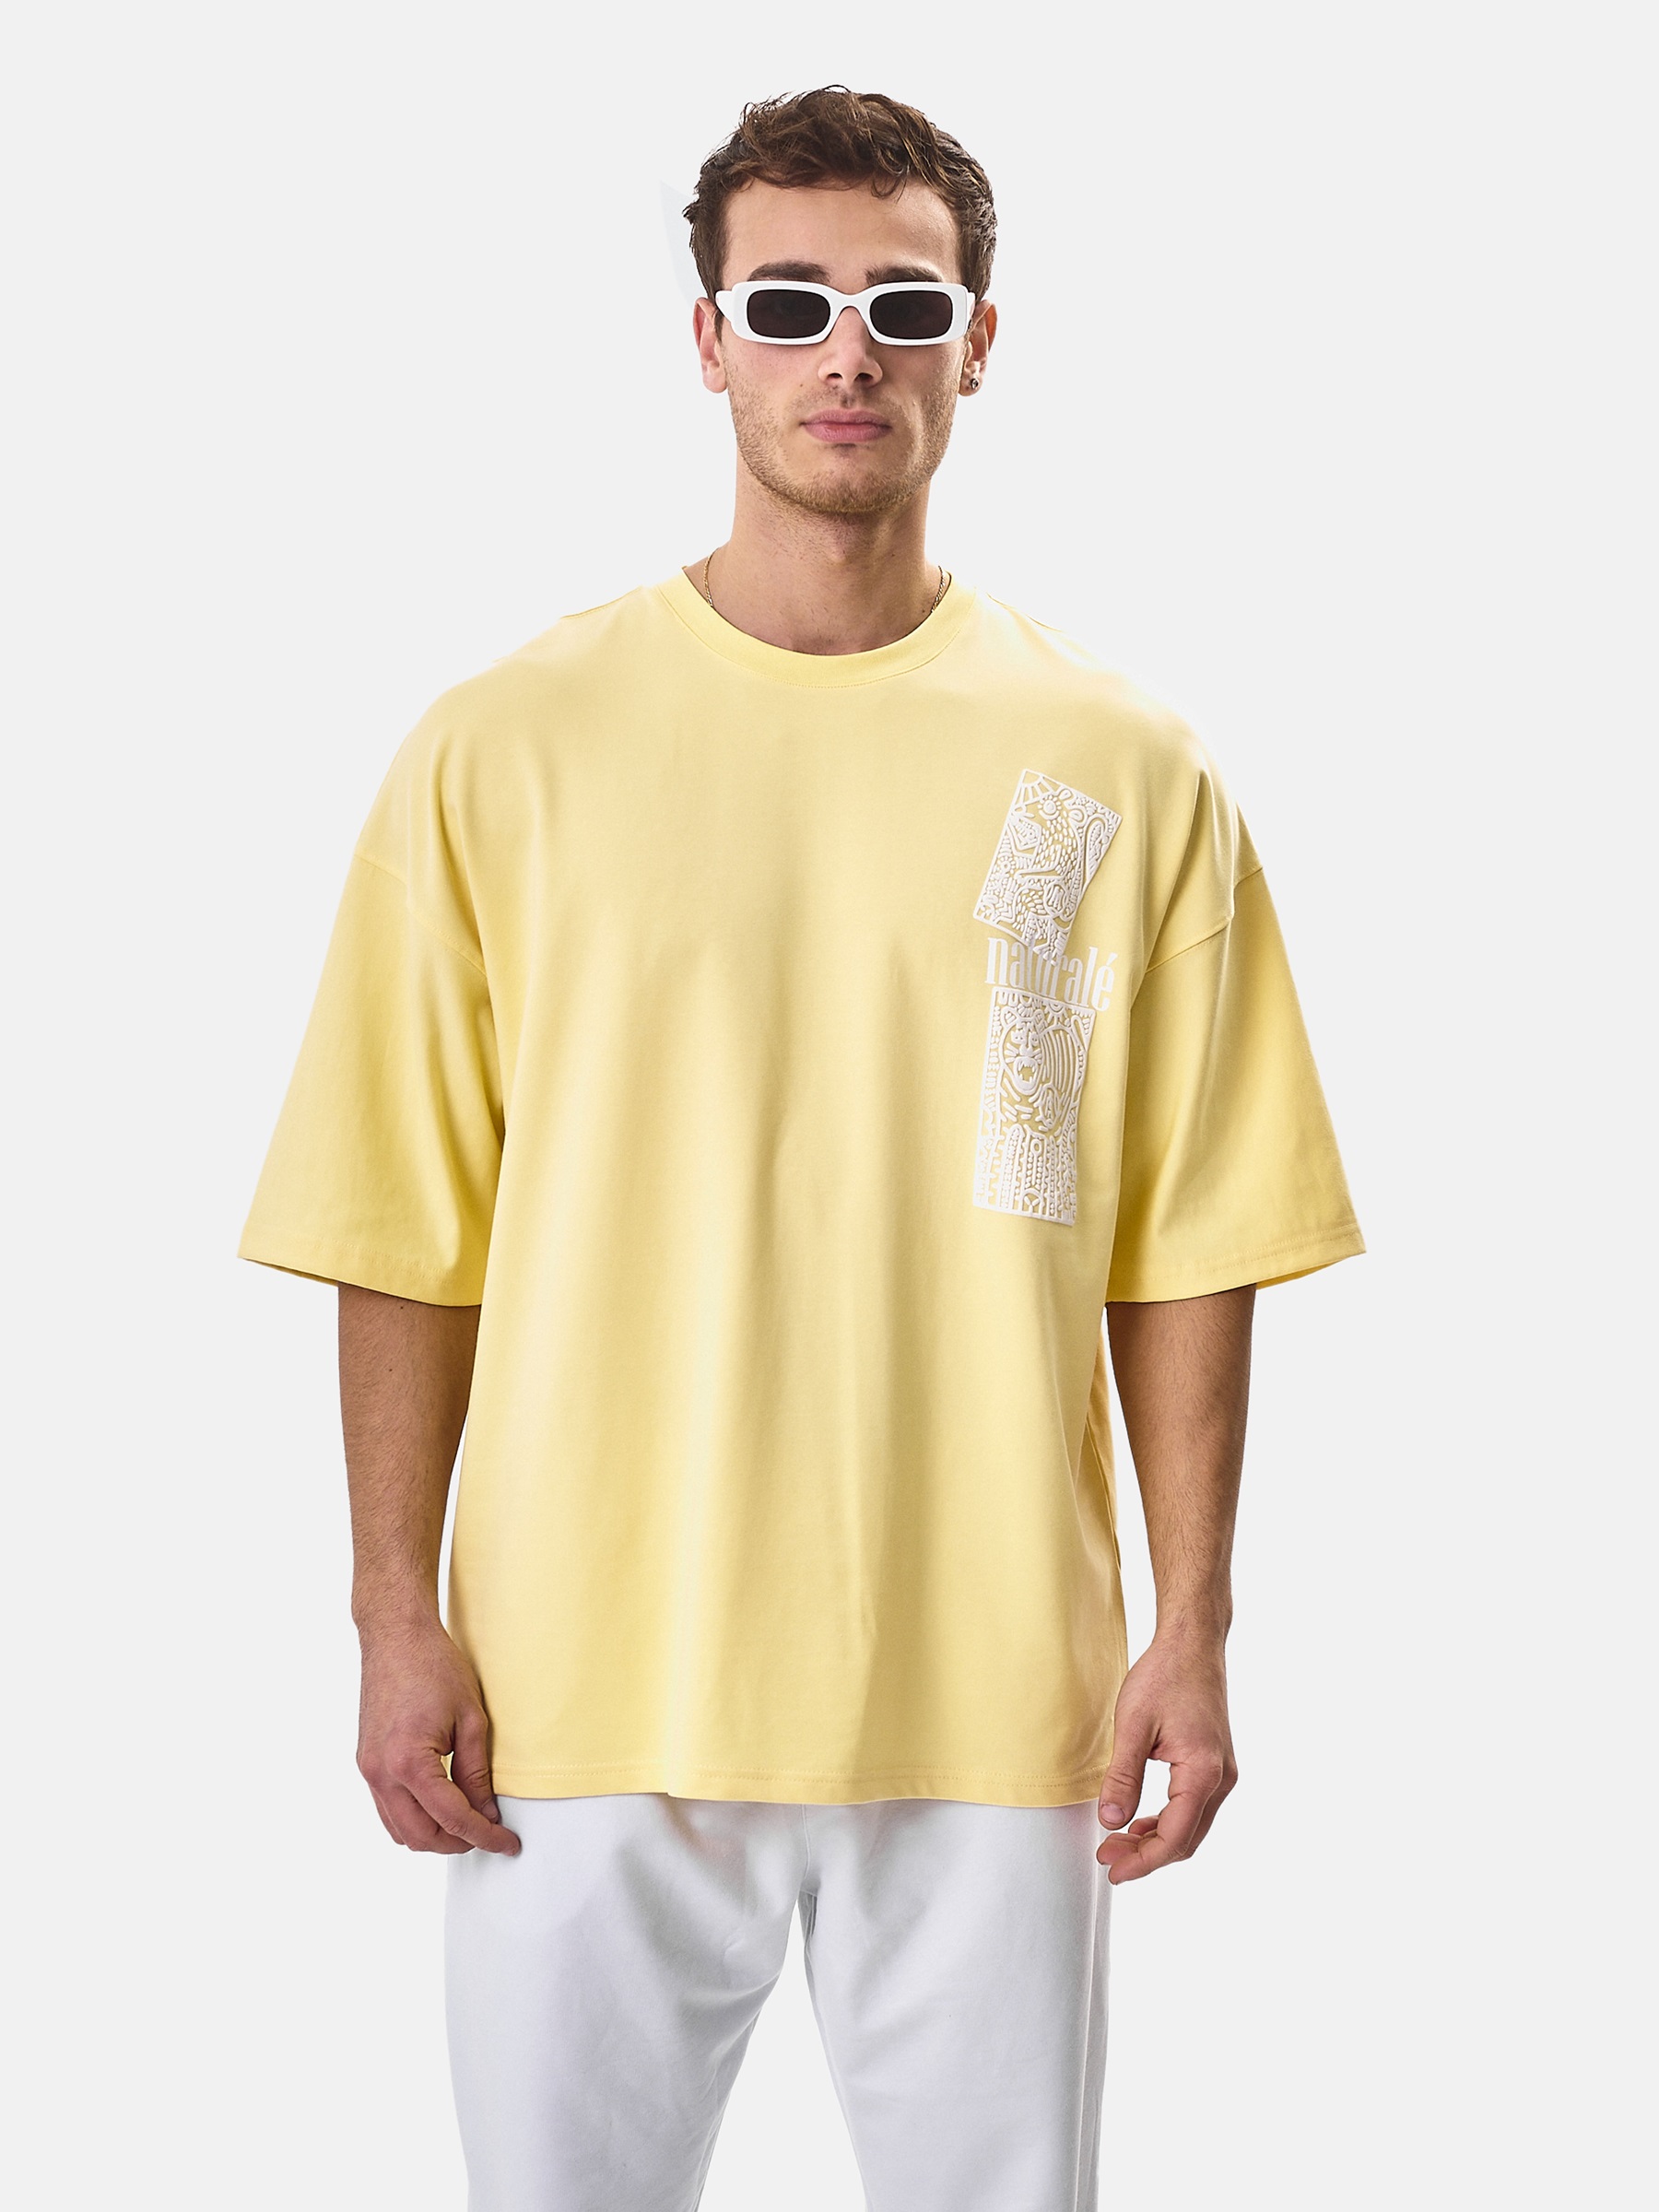 WAM Denim Bryant Yellow T-shirt-